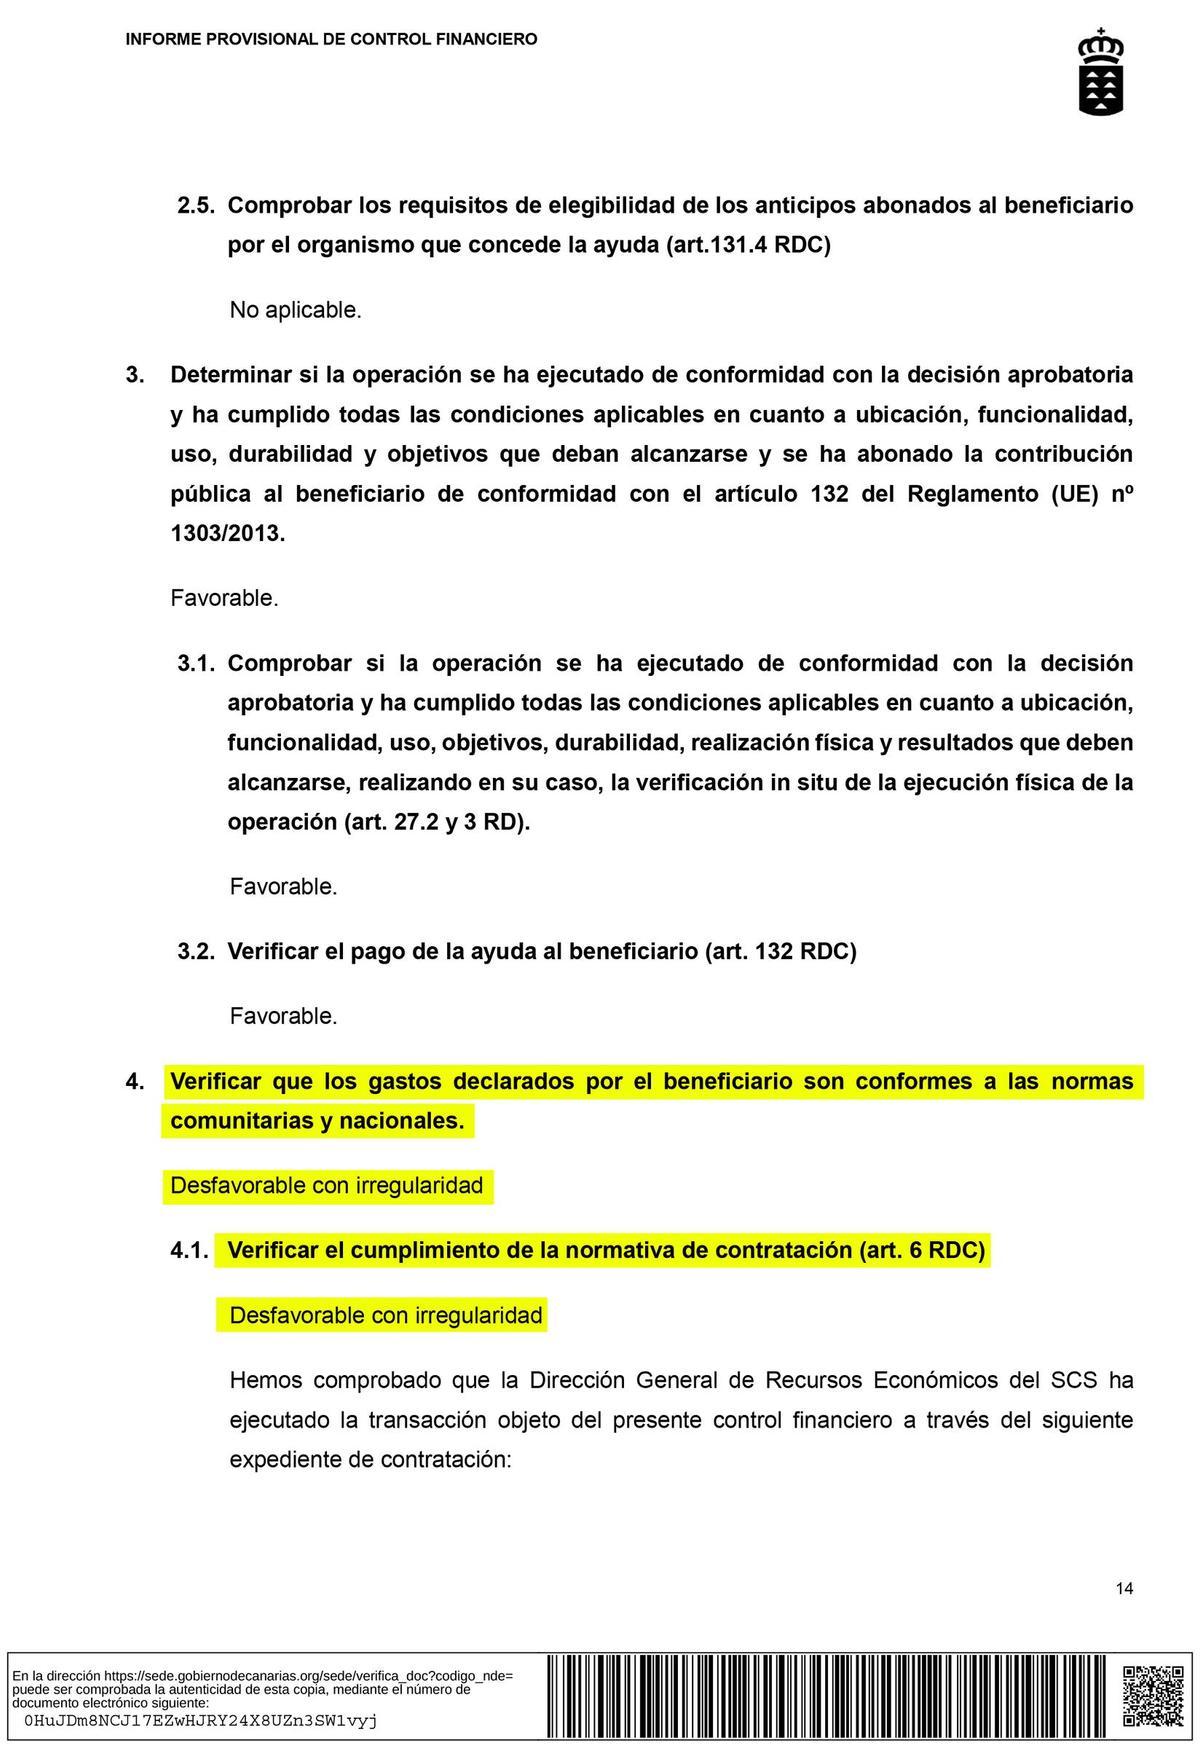 Informe de la Intervención General de Canarias que descubre las irregularidades en el contrato que cerró el SCS con la empresa Tanoja Service.